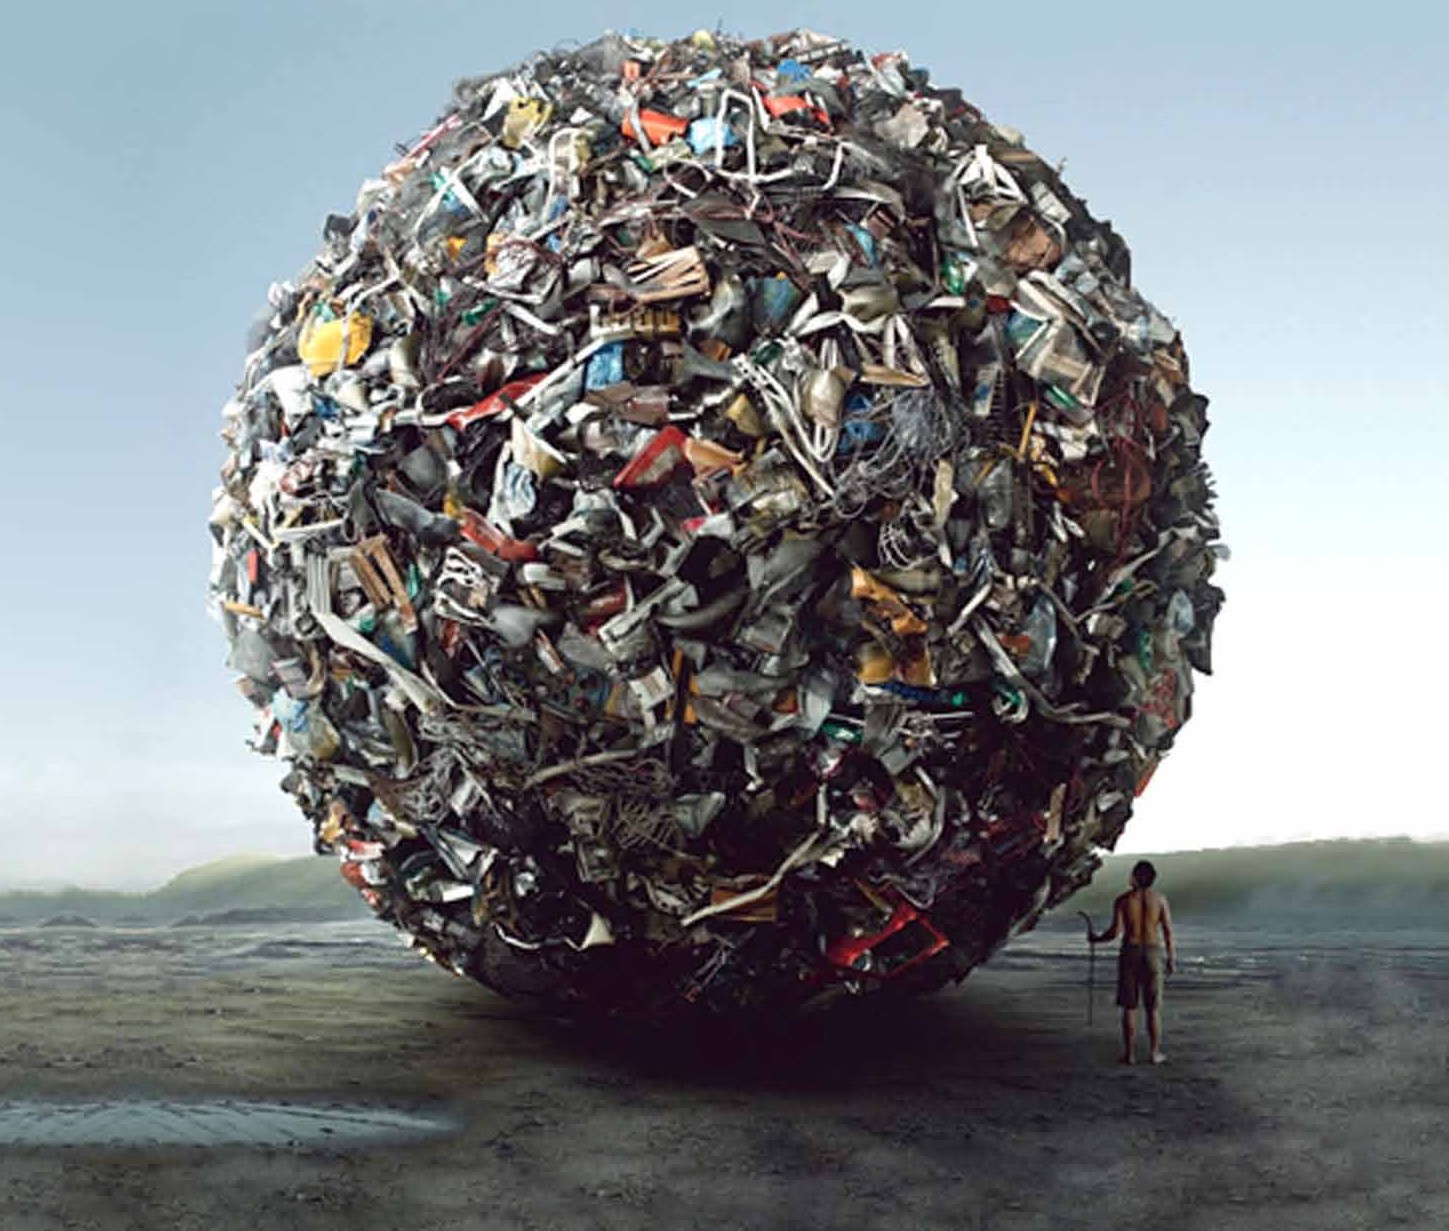 reciclagem e reutilização do lixo